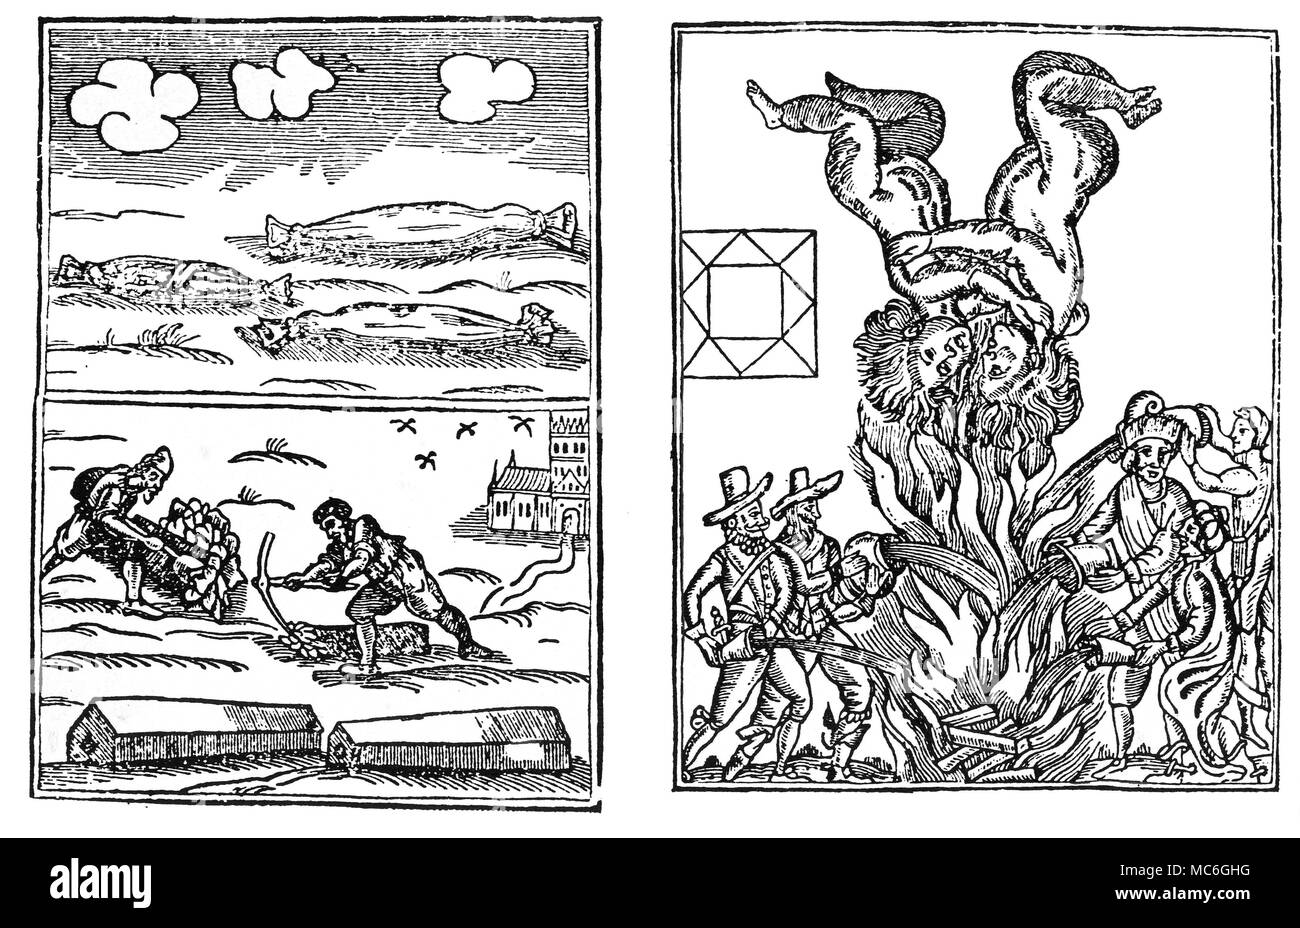 Astrologia - i geroglifici due "geroglifici', o piastre aenigmatic, pubblicato dall'astrologo inglese, William Lilly, 1651 circa. L'immagine a sinistra è stata presa come una previsione della grande peste del 1665. L'immagine a destra è stata presa come una predizione del grande incendio che distrusse gran parte di Londra nel 1666. Il collegamento con Londra è chiaramente esposto in termini astrologici, per i gemelli passando sopra il fuoco rappresentano Gemini - Il segno zodiacale che le regole di Londra. Da Richard A. Proctor, miti e meraviglie di astronomia, 1889. Foto Stock